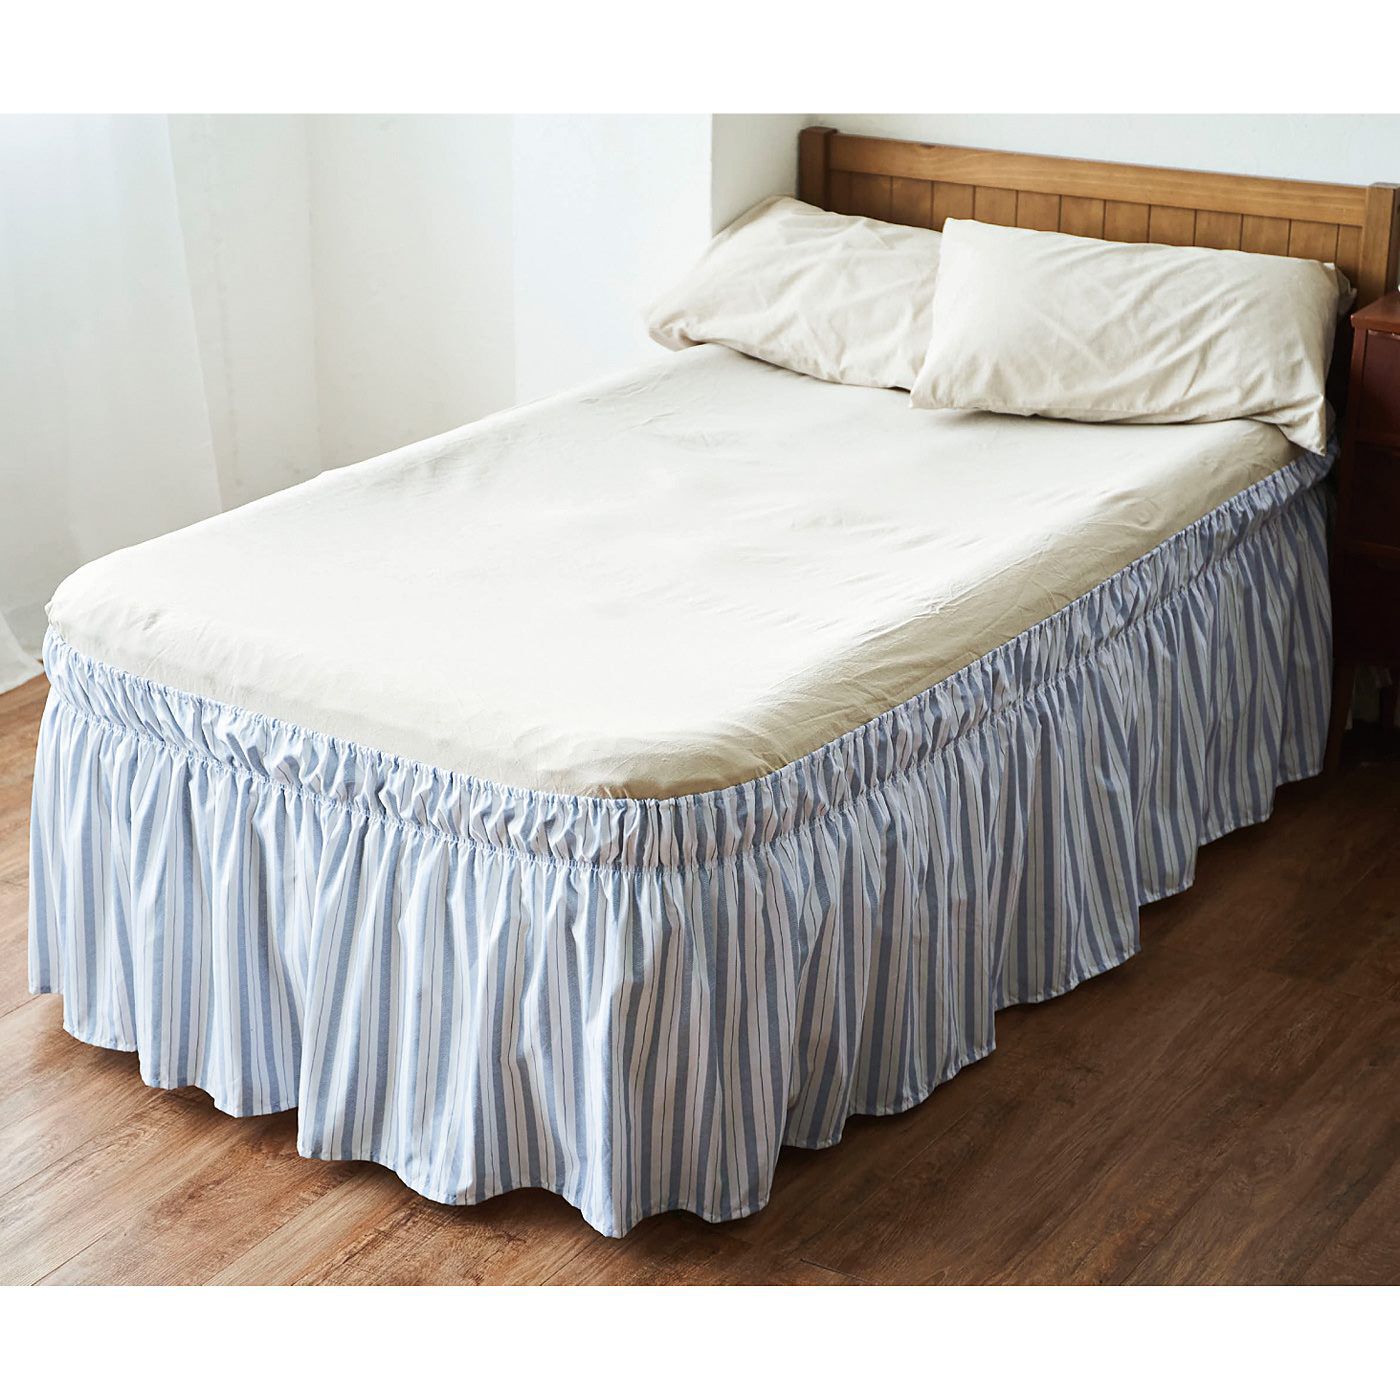 Real Stock|クーフゥ　ベッド下のごちゃつきをすっきり目隠し　ほこりよけにもなるベッドスカート|※これは〈2. スモークブルー〉です。